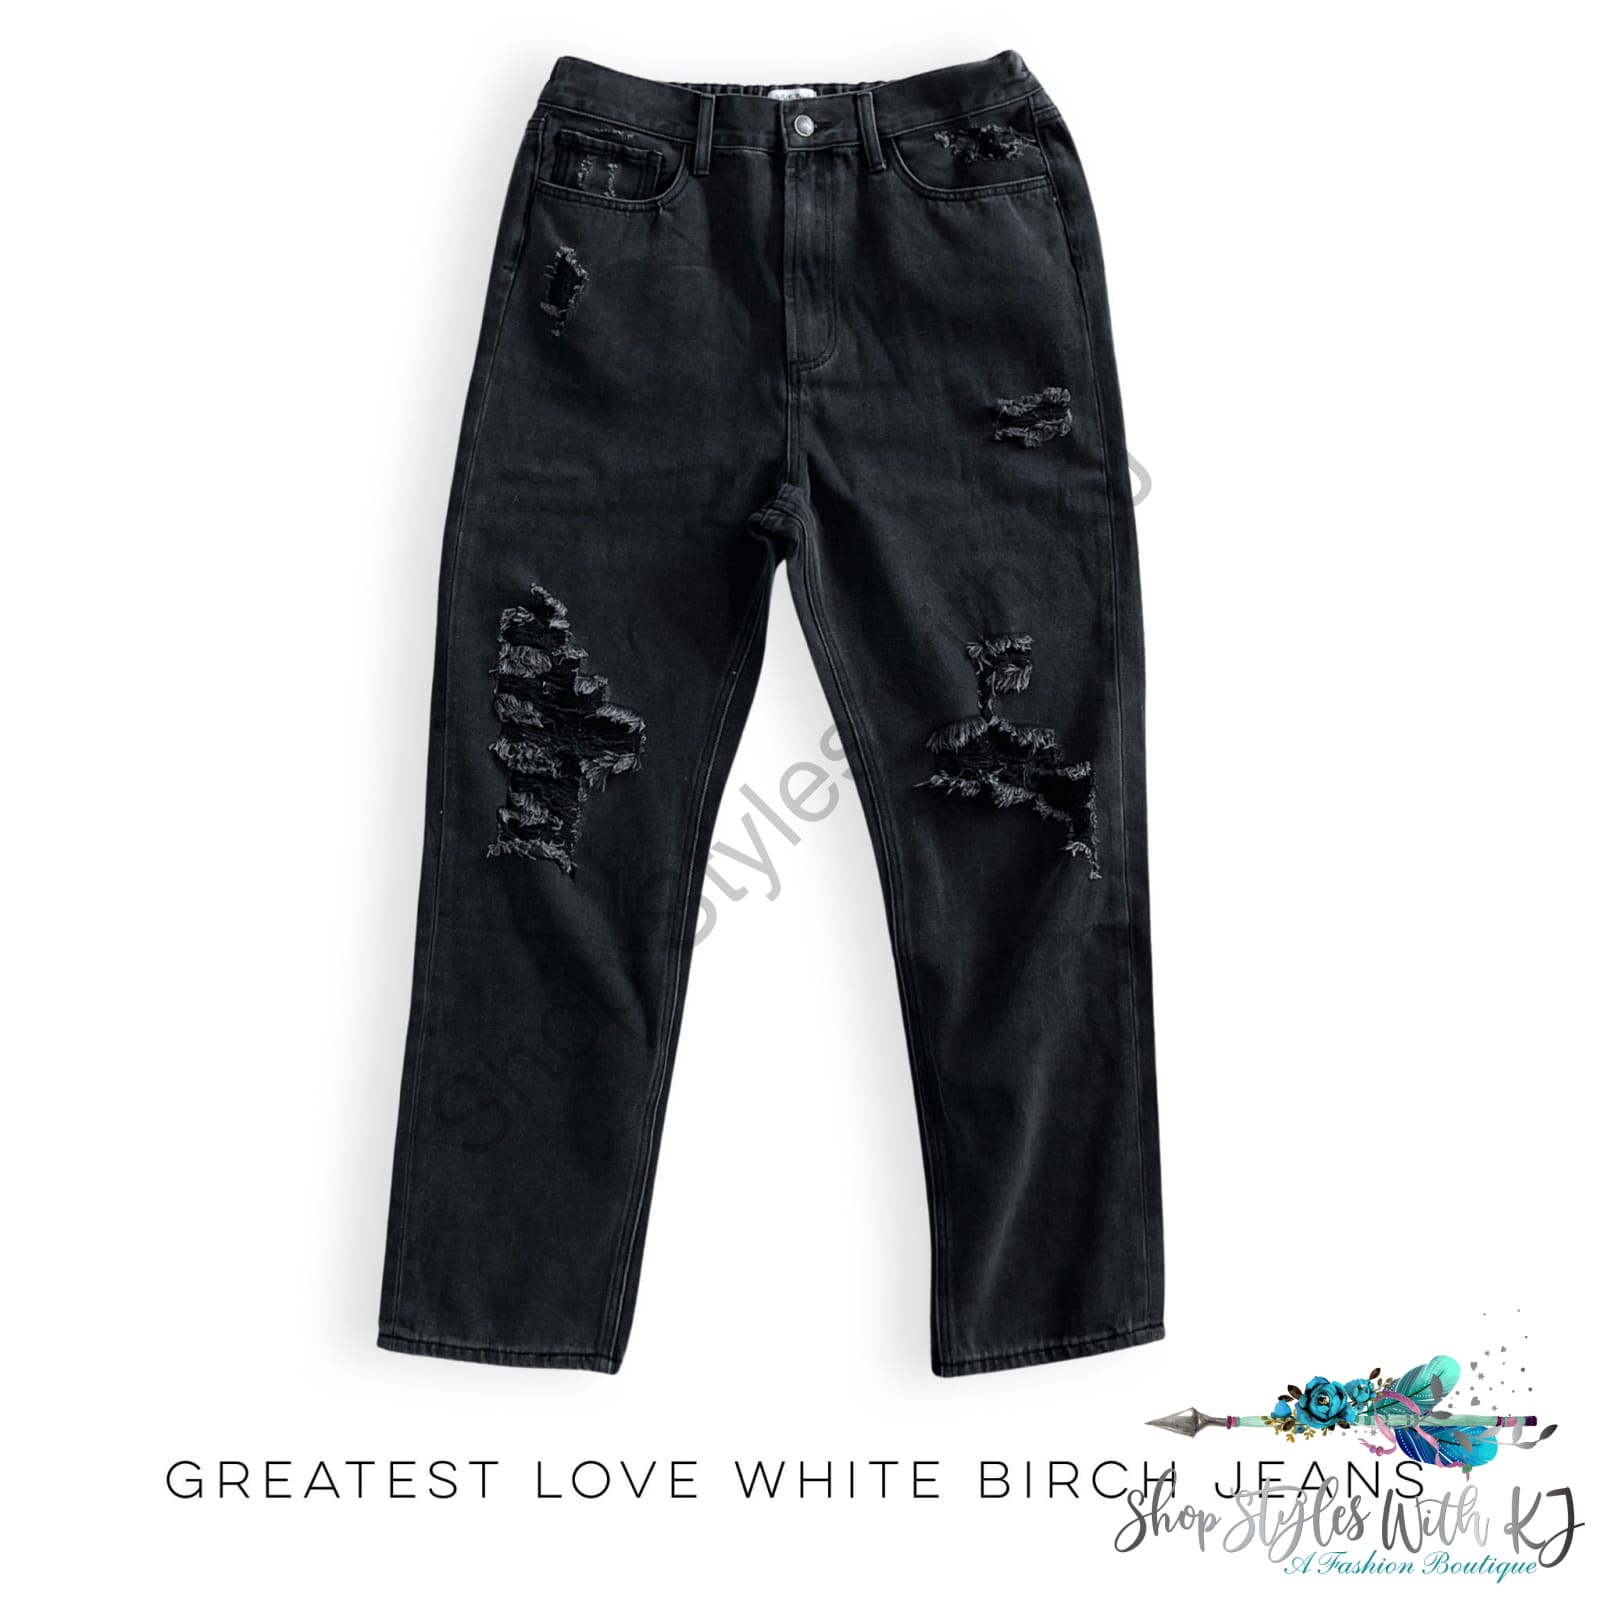 Greatest Love White Birch Jeans